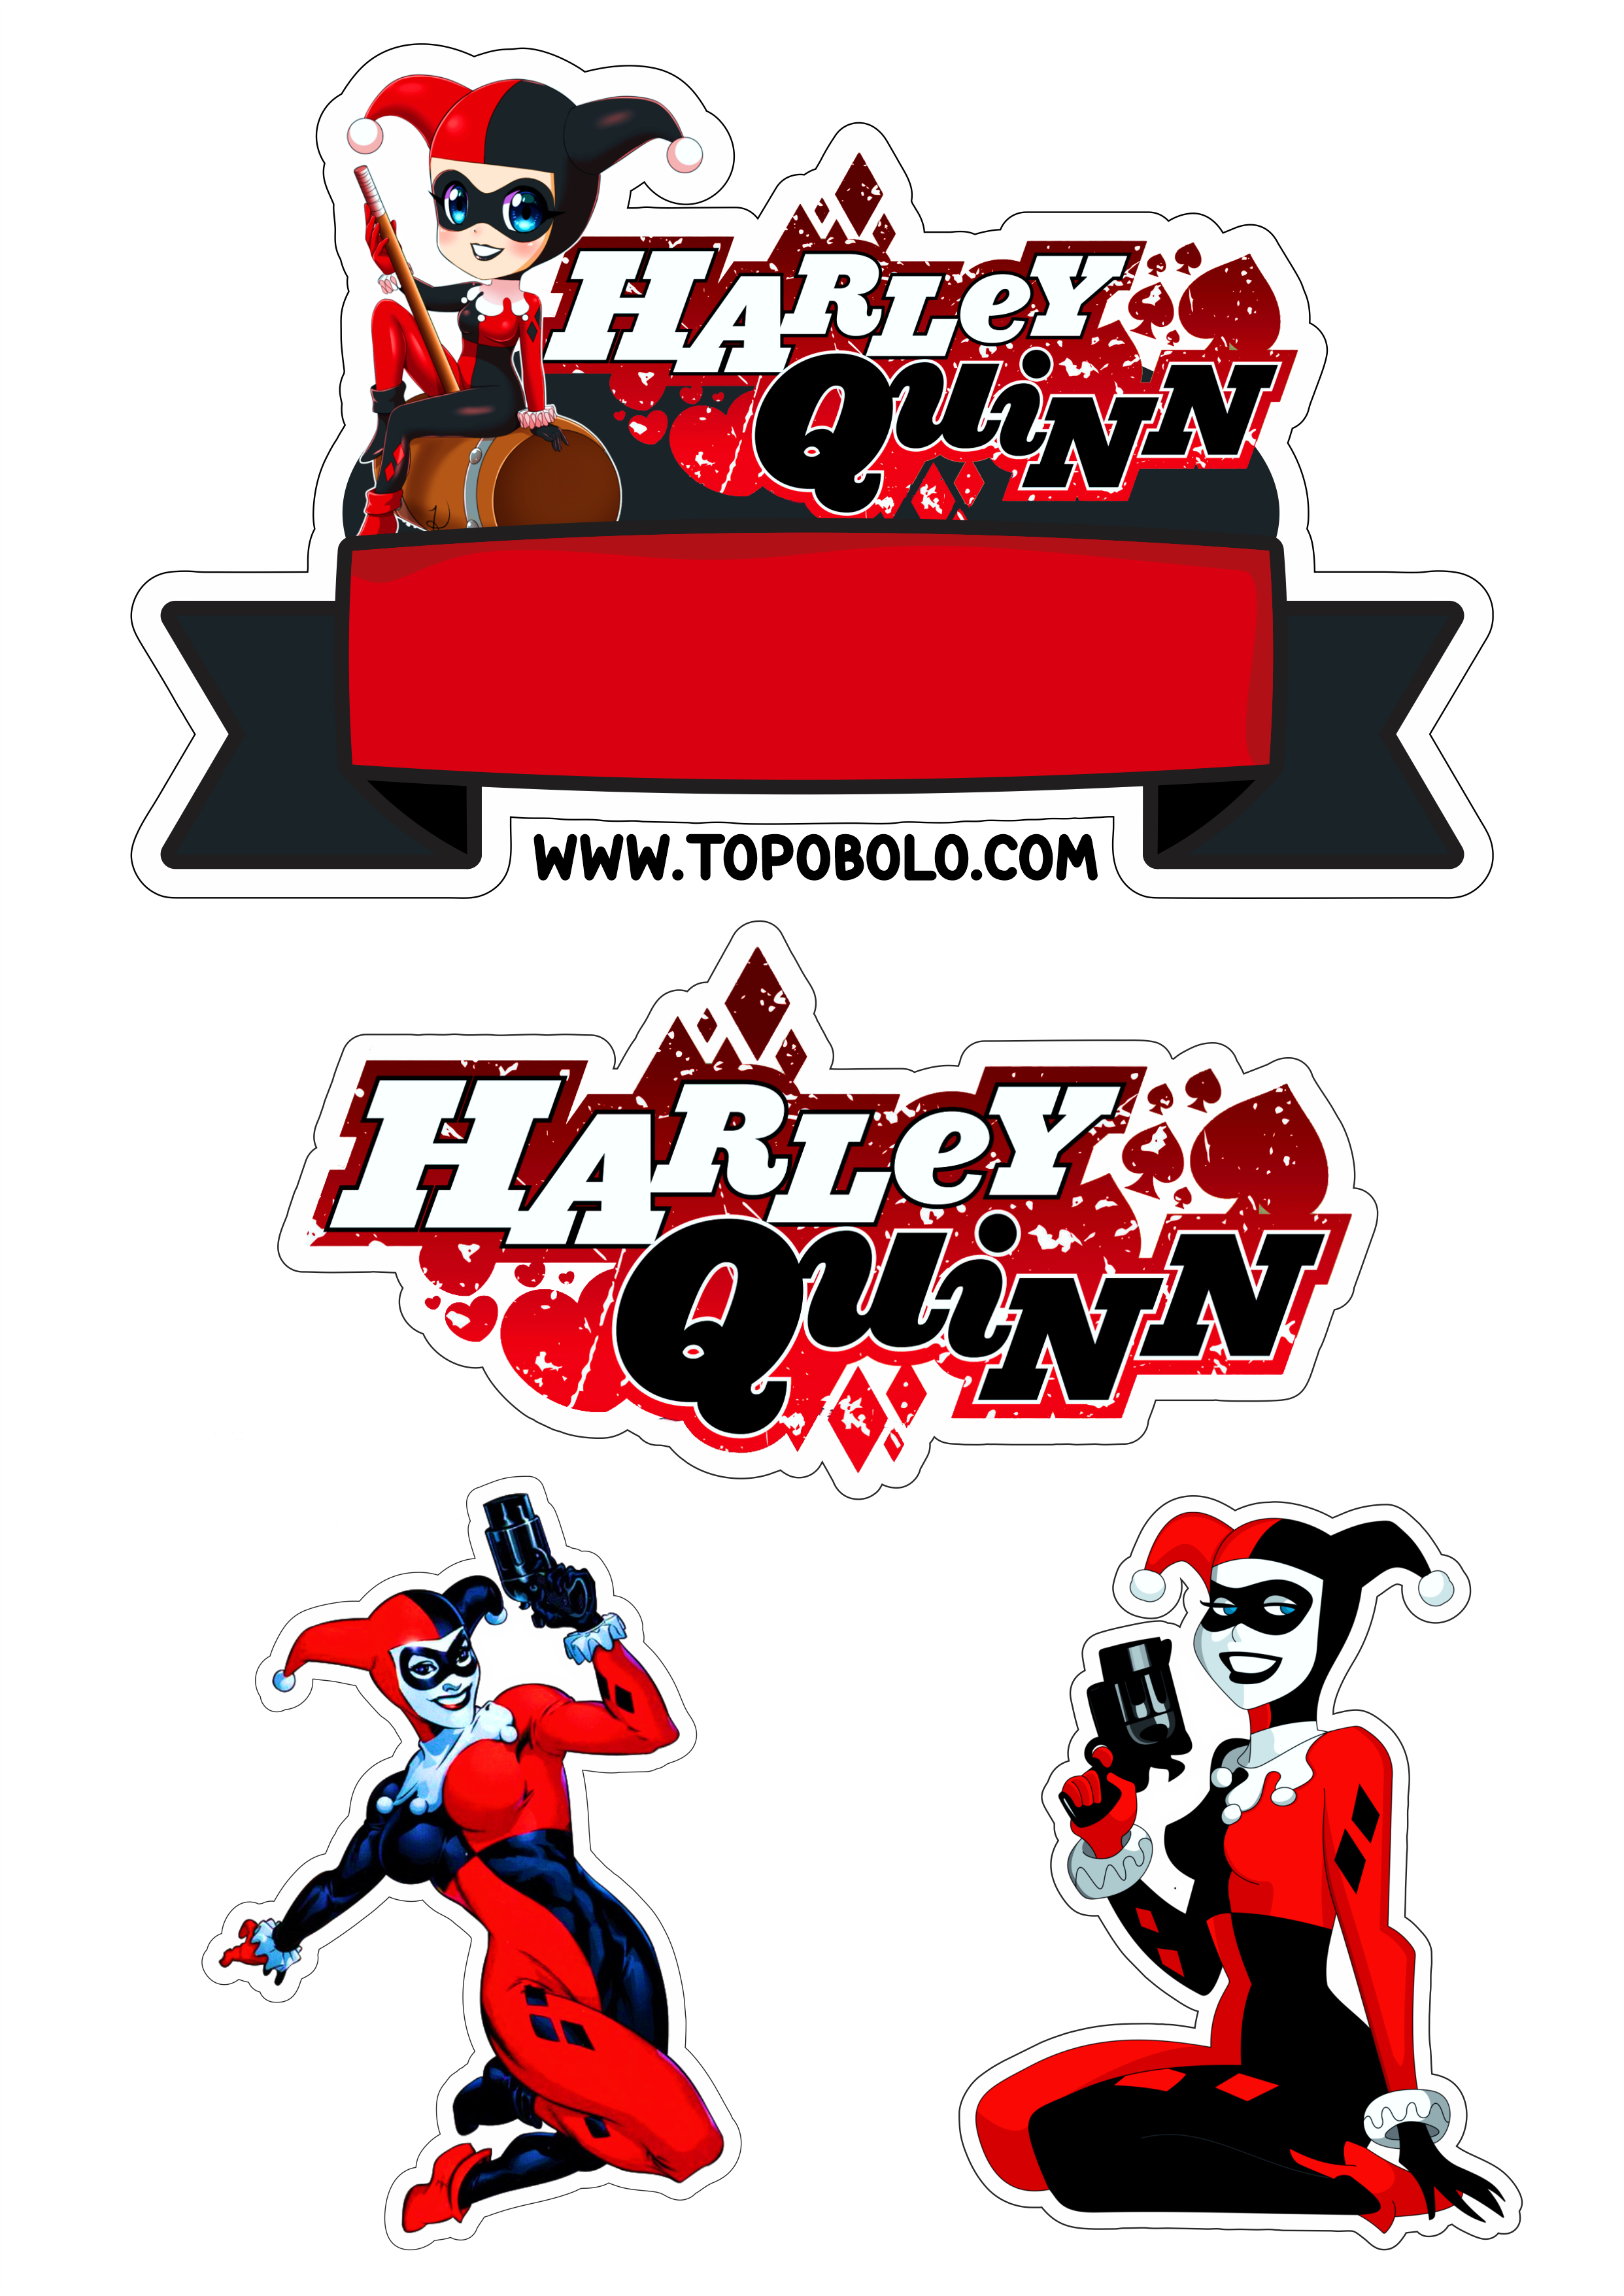 Arlequina decoração de aniversário topo de bolo para imprimir Harley Quinn dc comics hora da festa png image personalizados renda extra